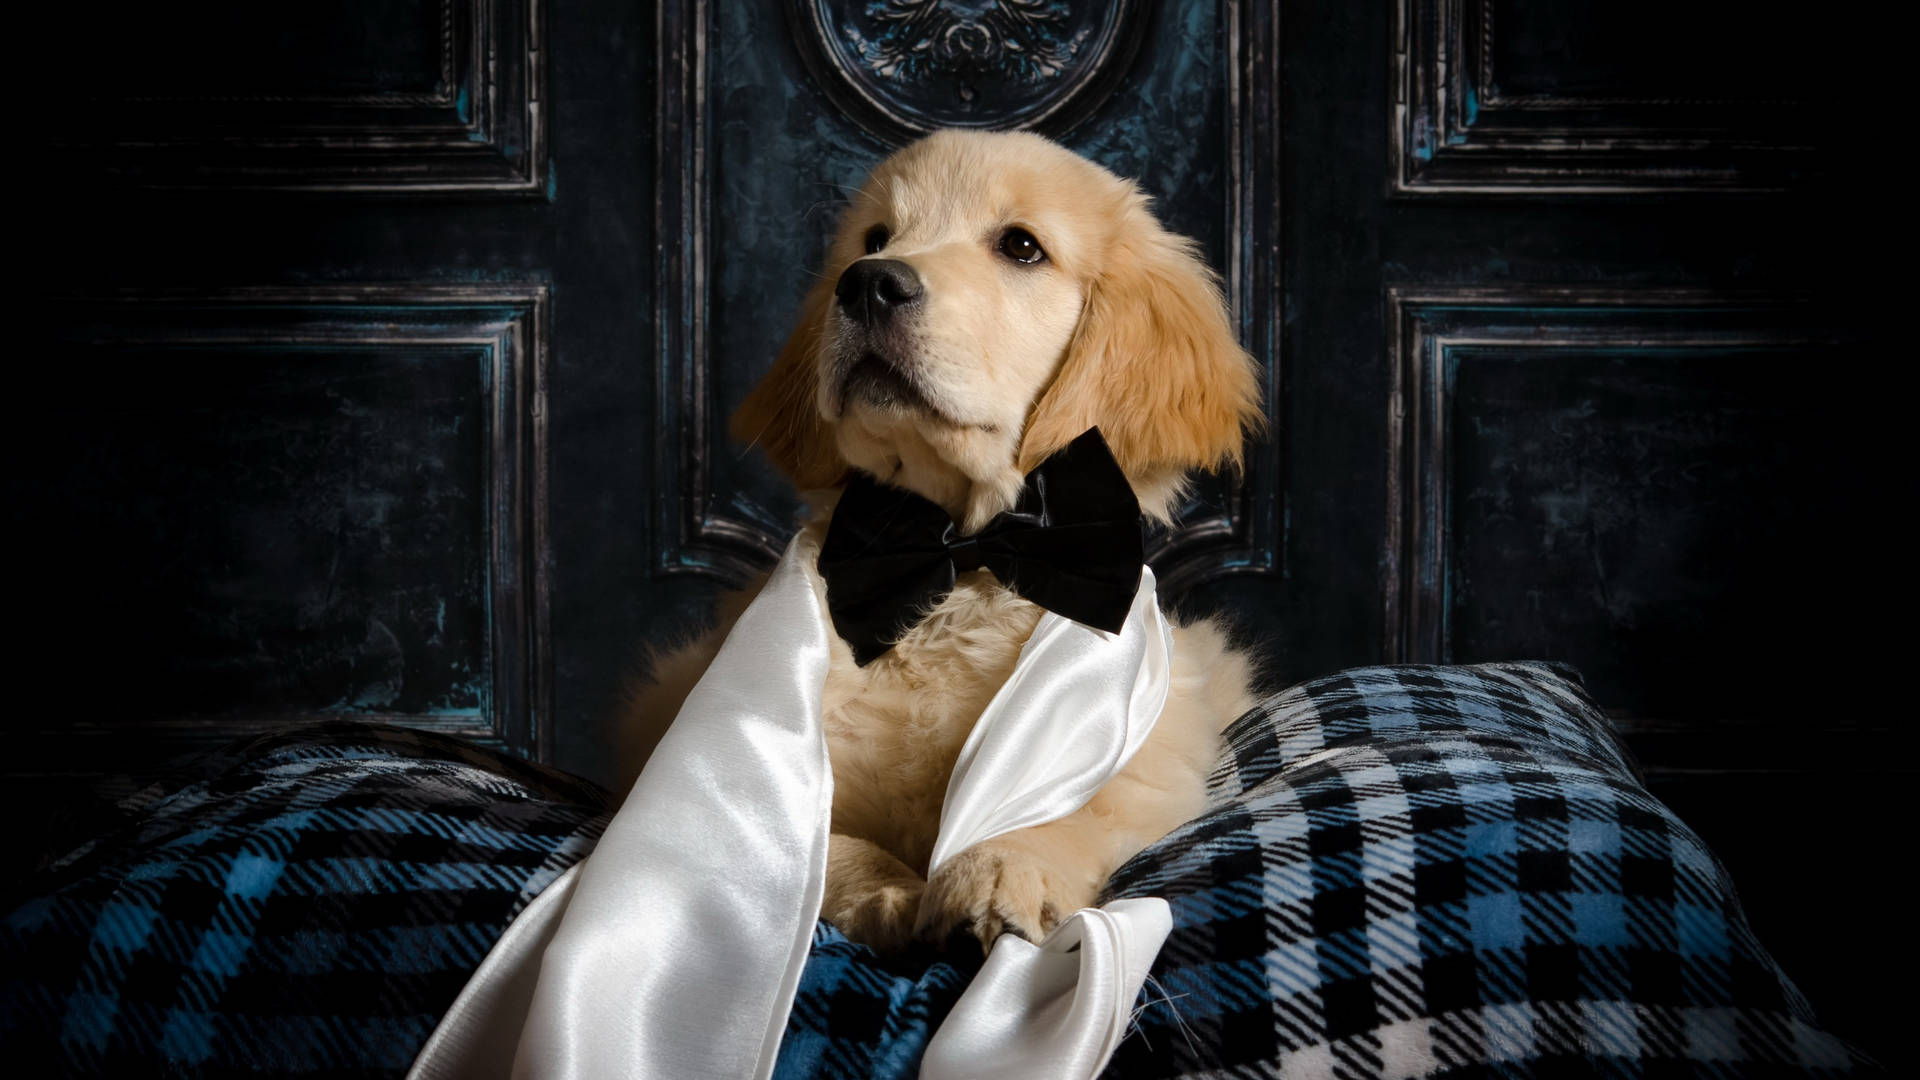 Cute Golden Retriever Dog With Bowtie Wallpaper